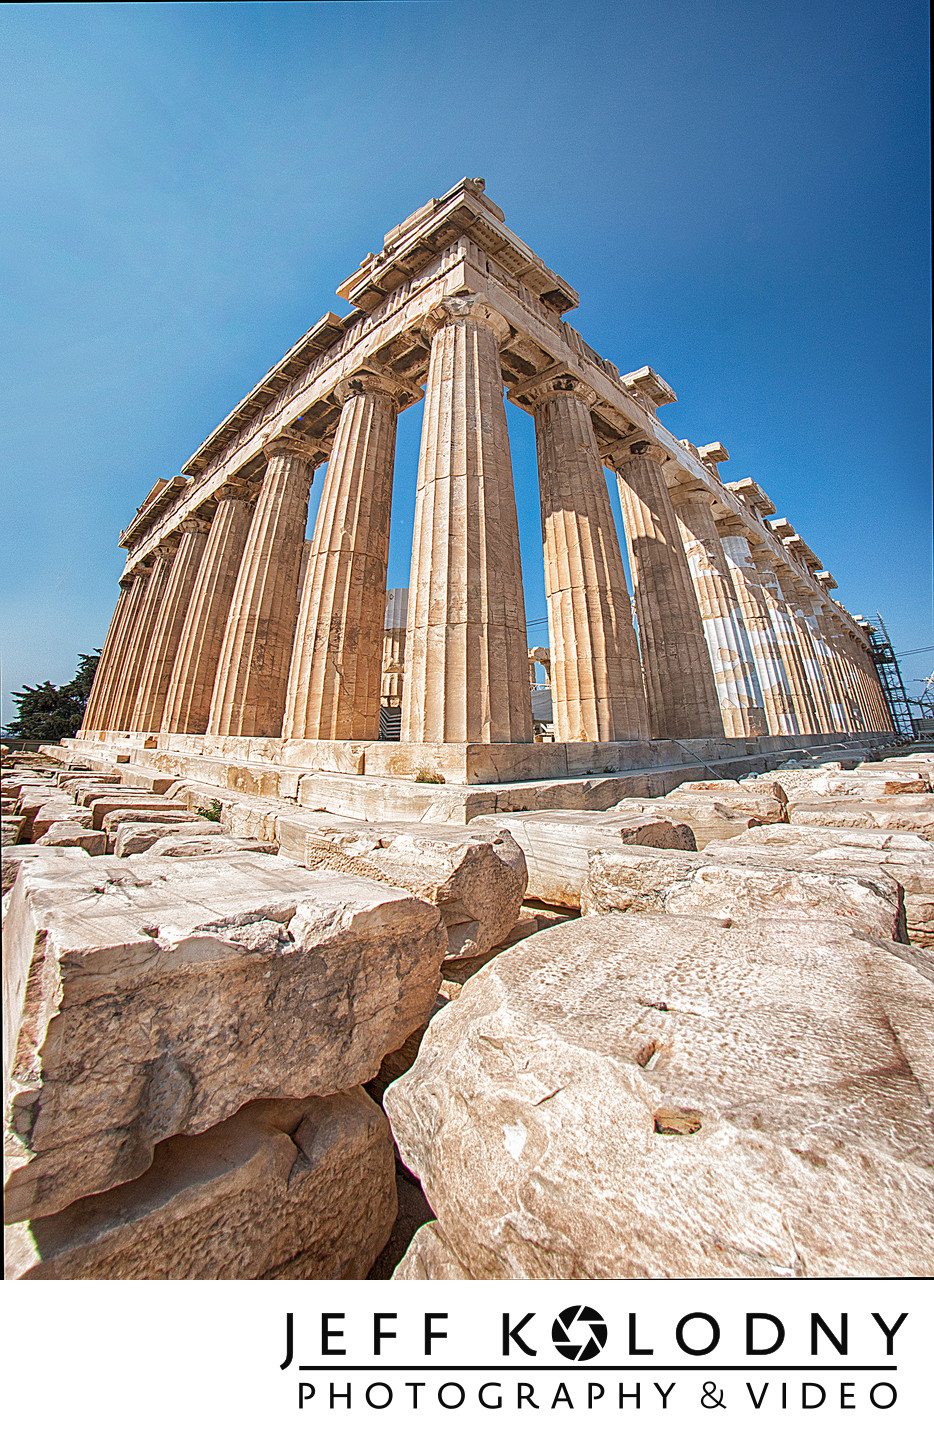 Unique angle of the Parthenon in Greece.